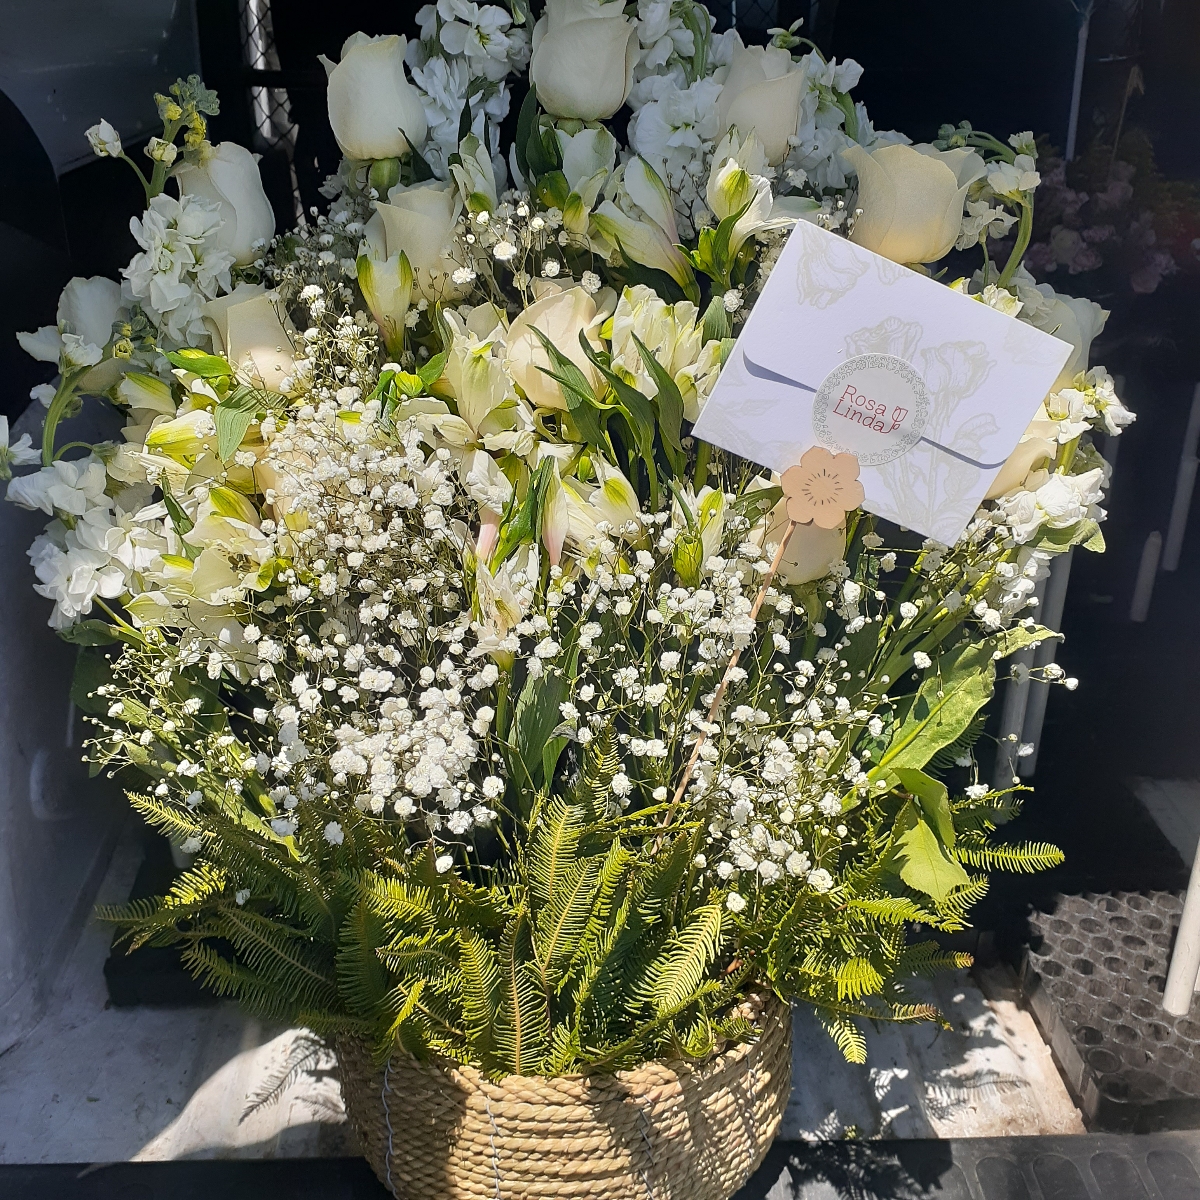 Pésame - Arreglo floral de condolencias con rosas y mix de flores blancas de temporaada - Pedido 248462